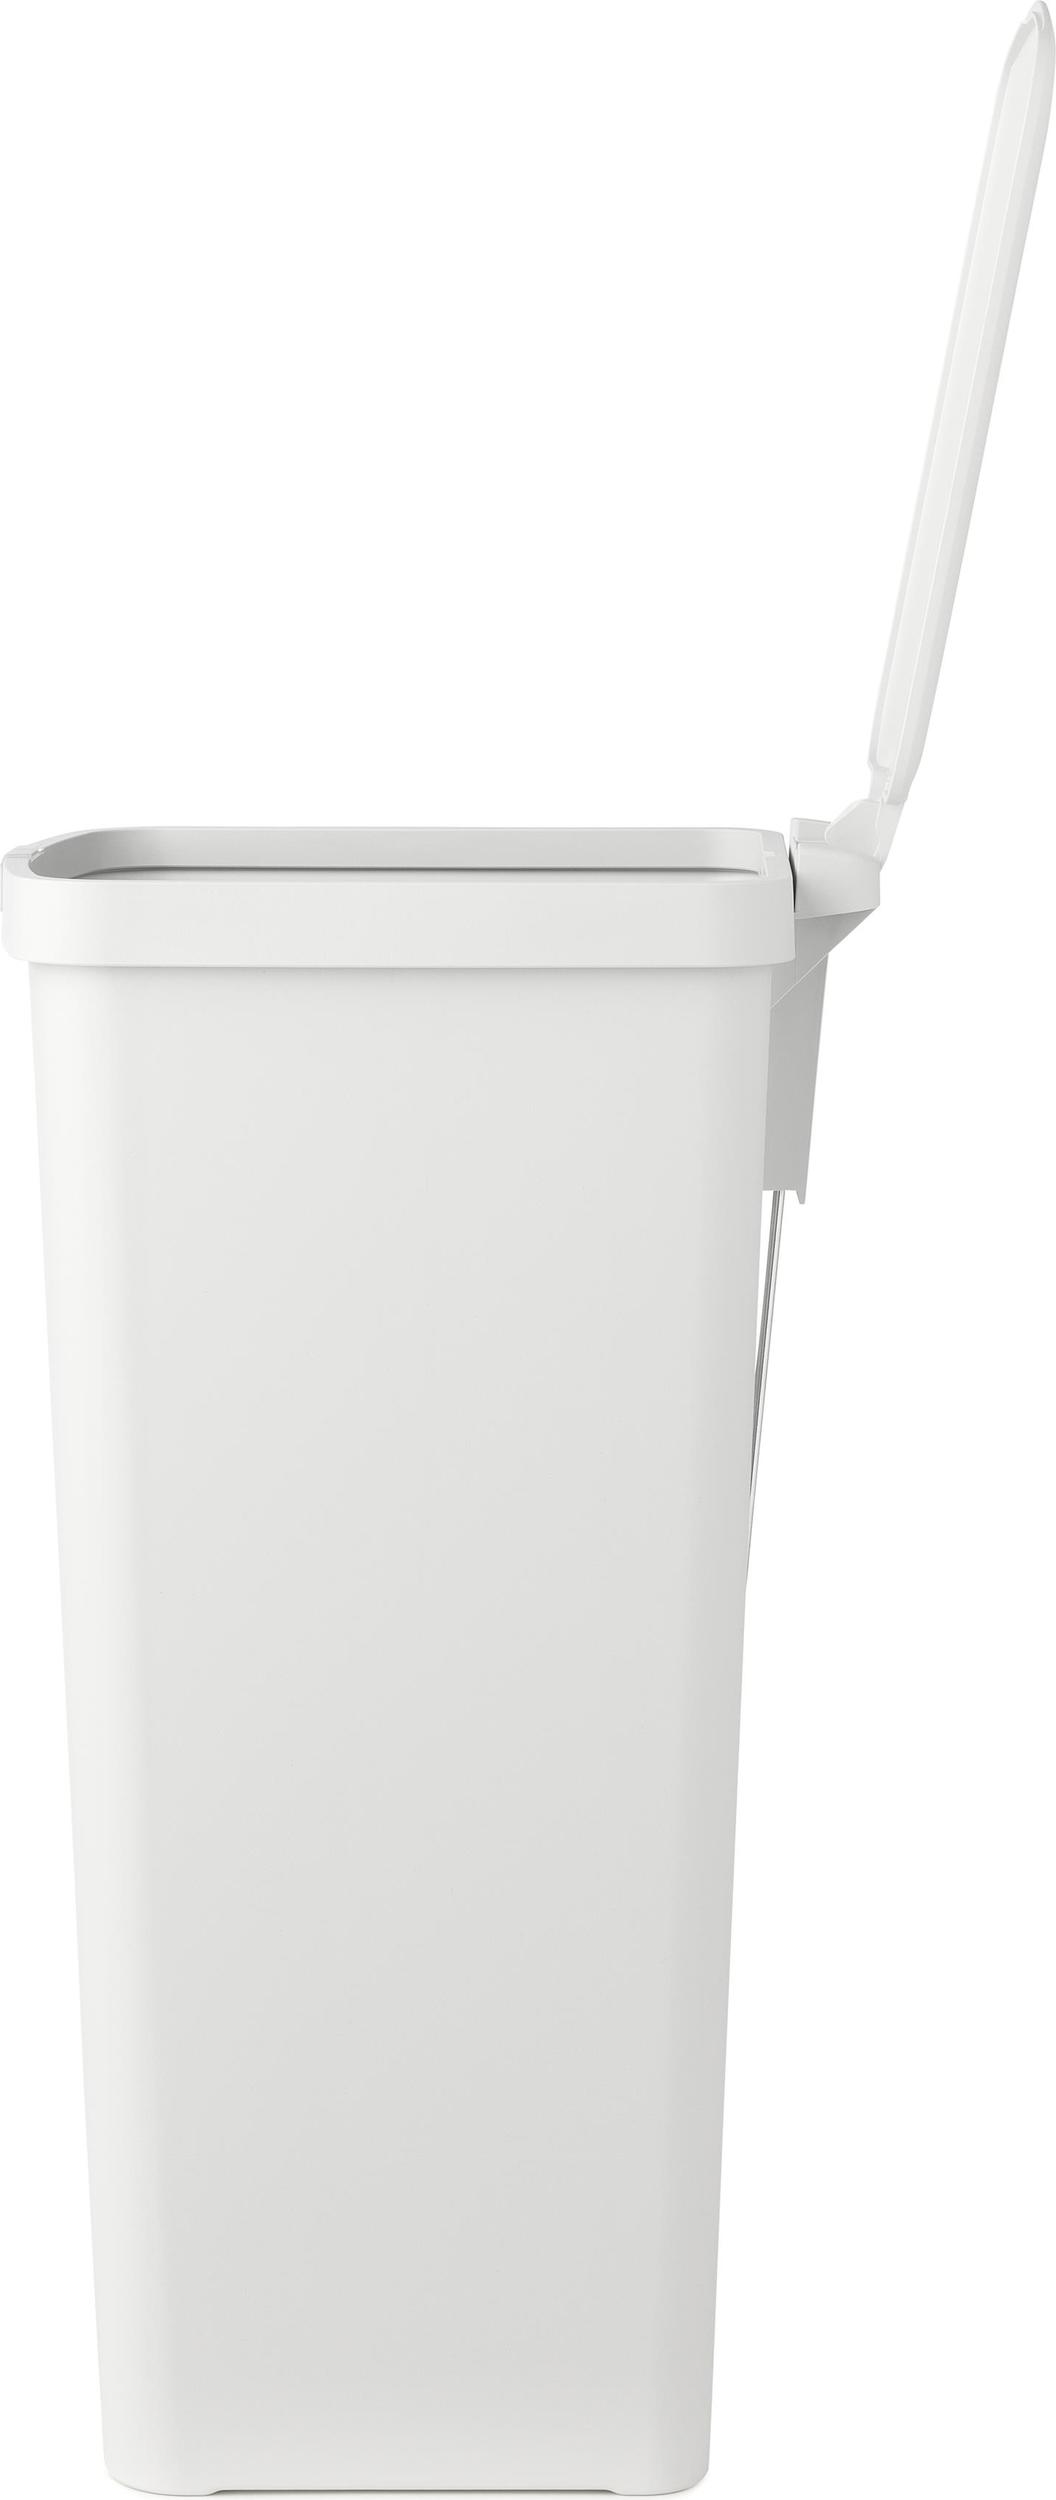 Longopac® Stand Dynamic Mini Reinraum-Abfallbehälter-Mülleimer mit Pedal  und Deckel